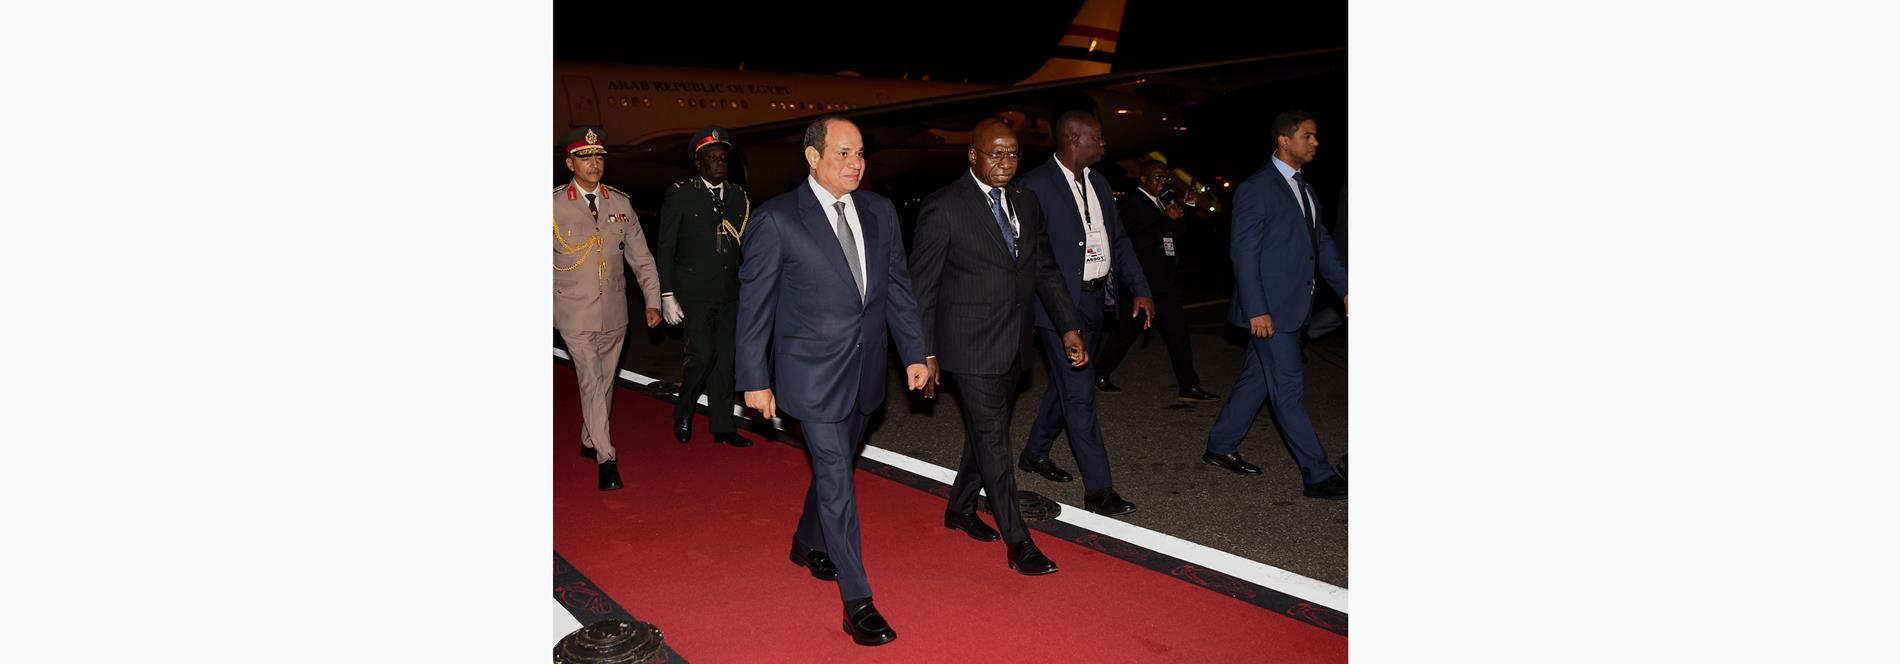 الرئيس عبد الفتاح السيسي يصل إلى العاصمة الأنجولية لواندا